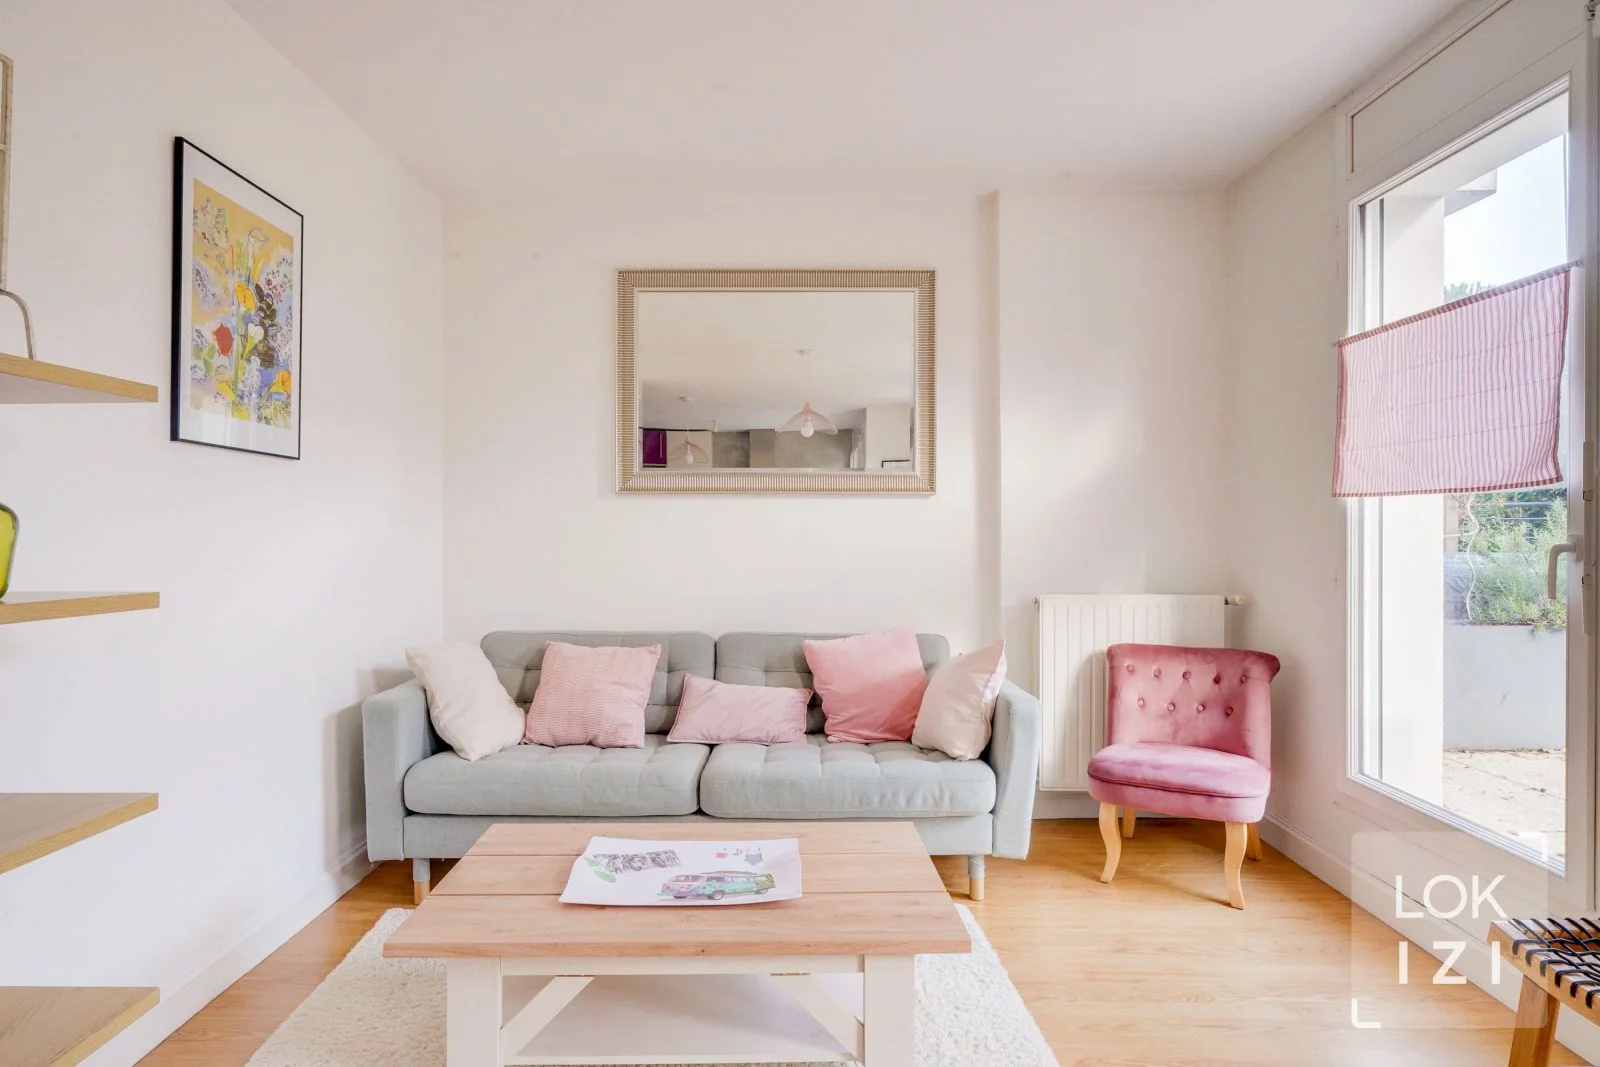 Location appartement meublé 3 pièces 76m² (Bruges - Bordeaux Lac)